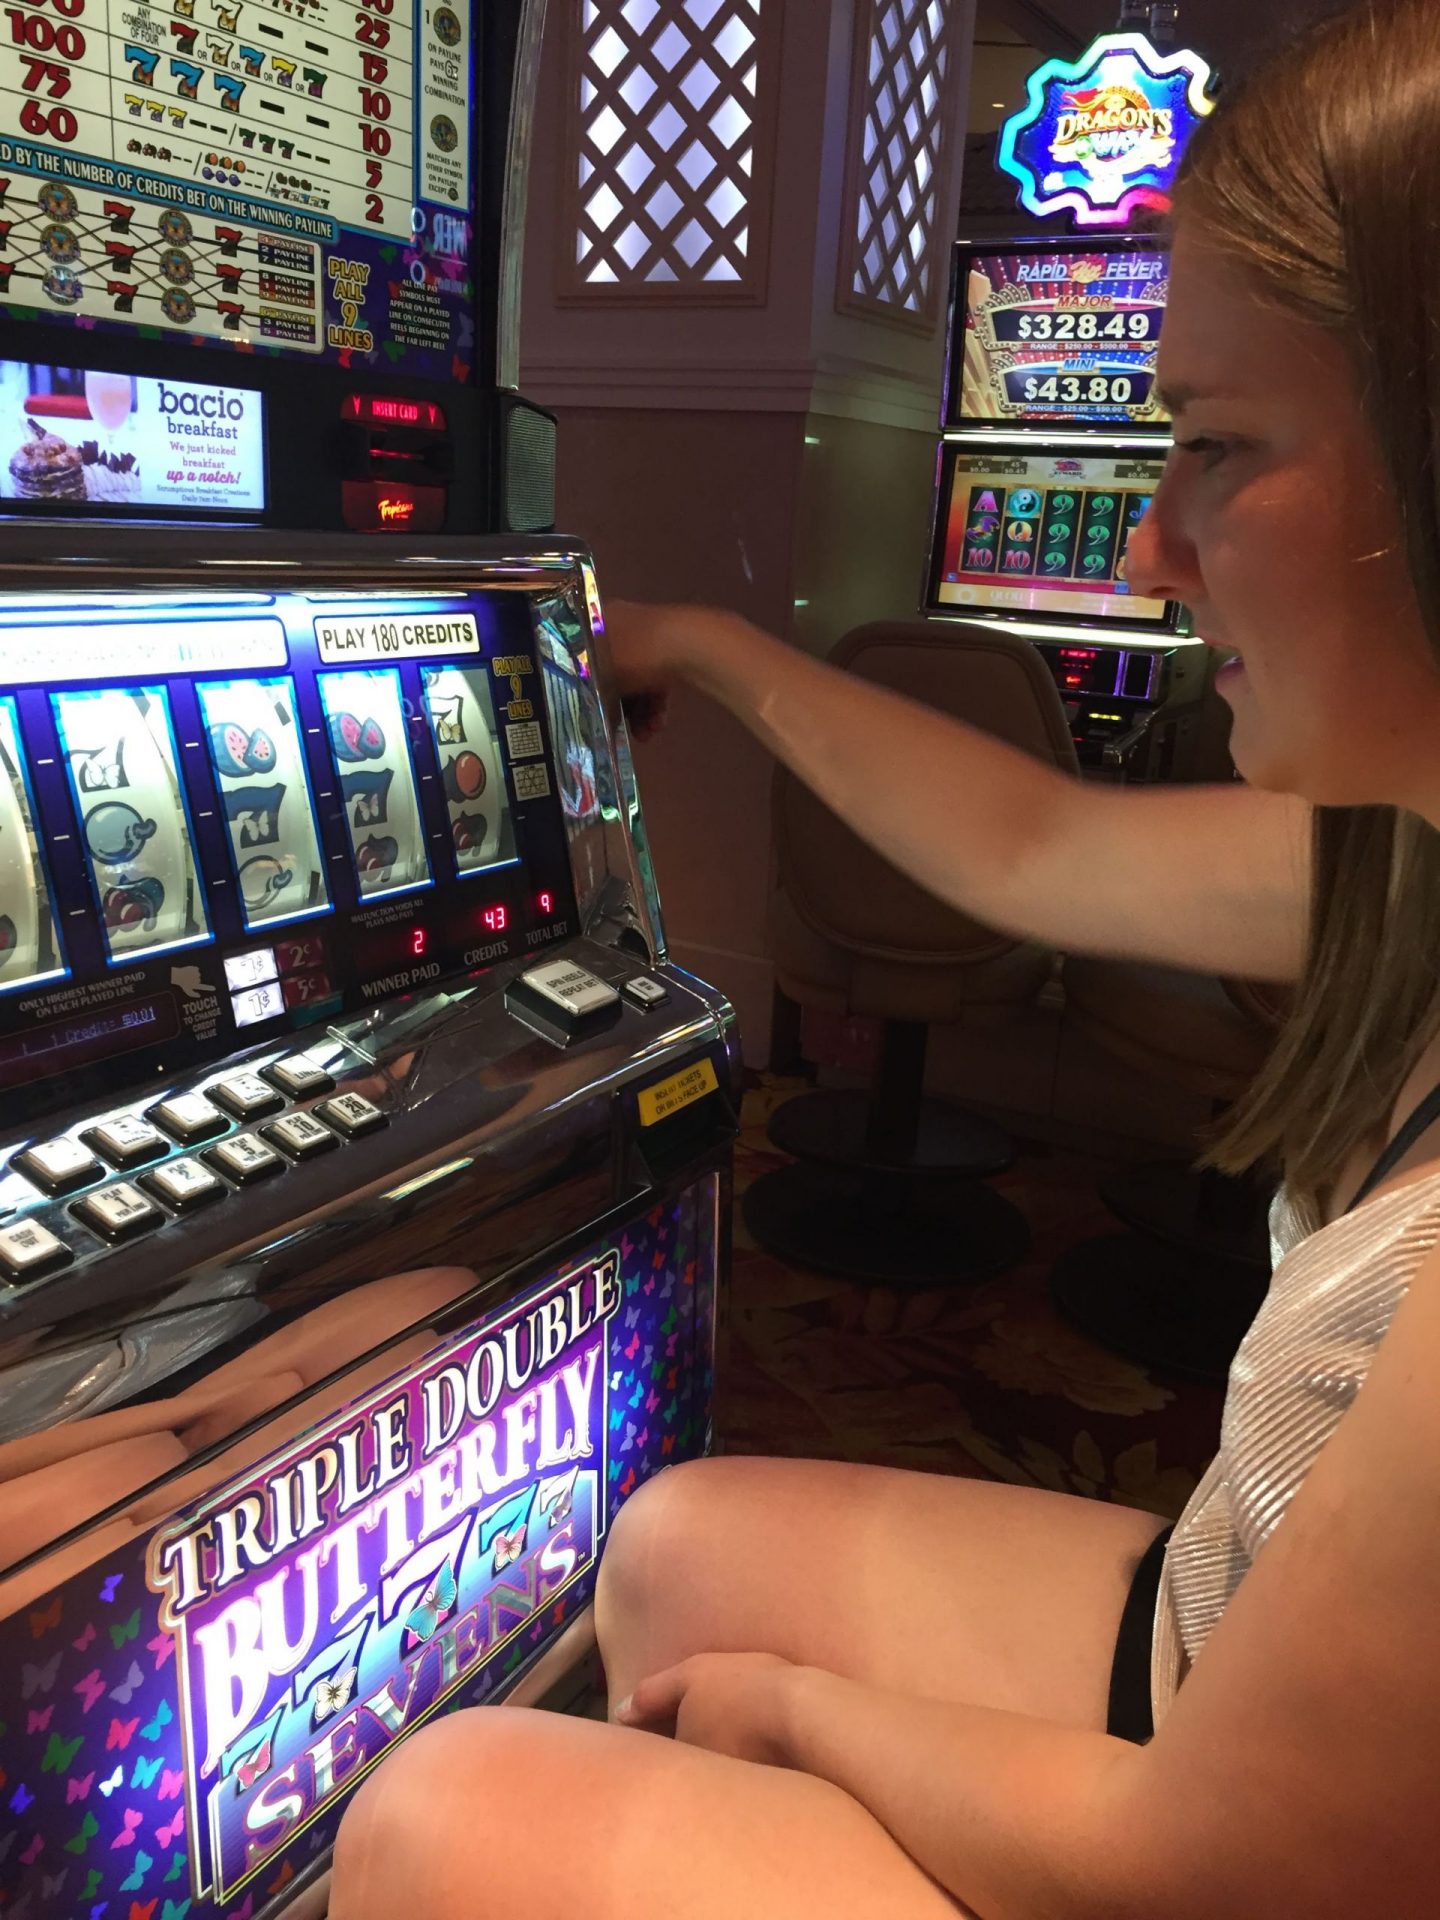 Casino slots at the MGM Grand